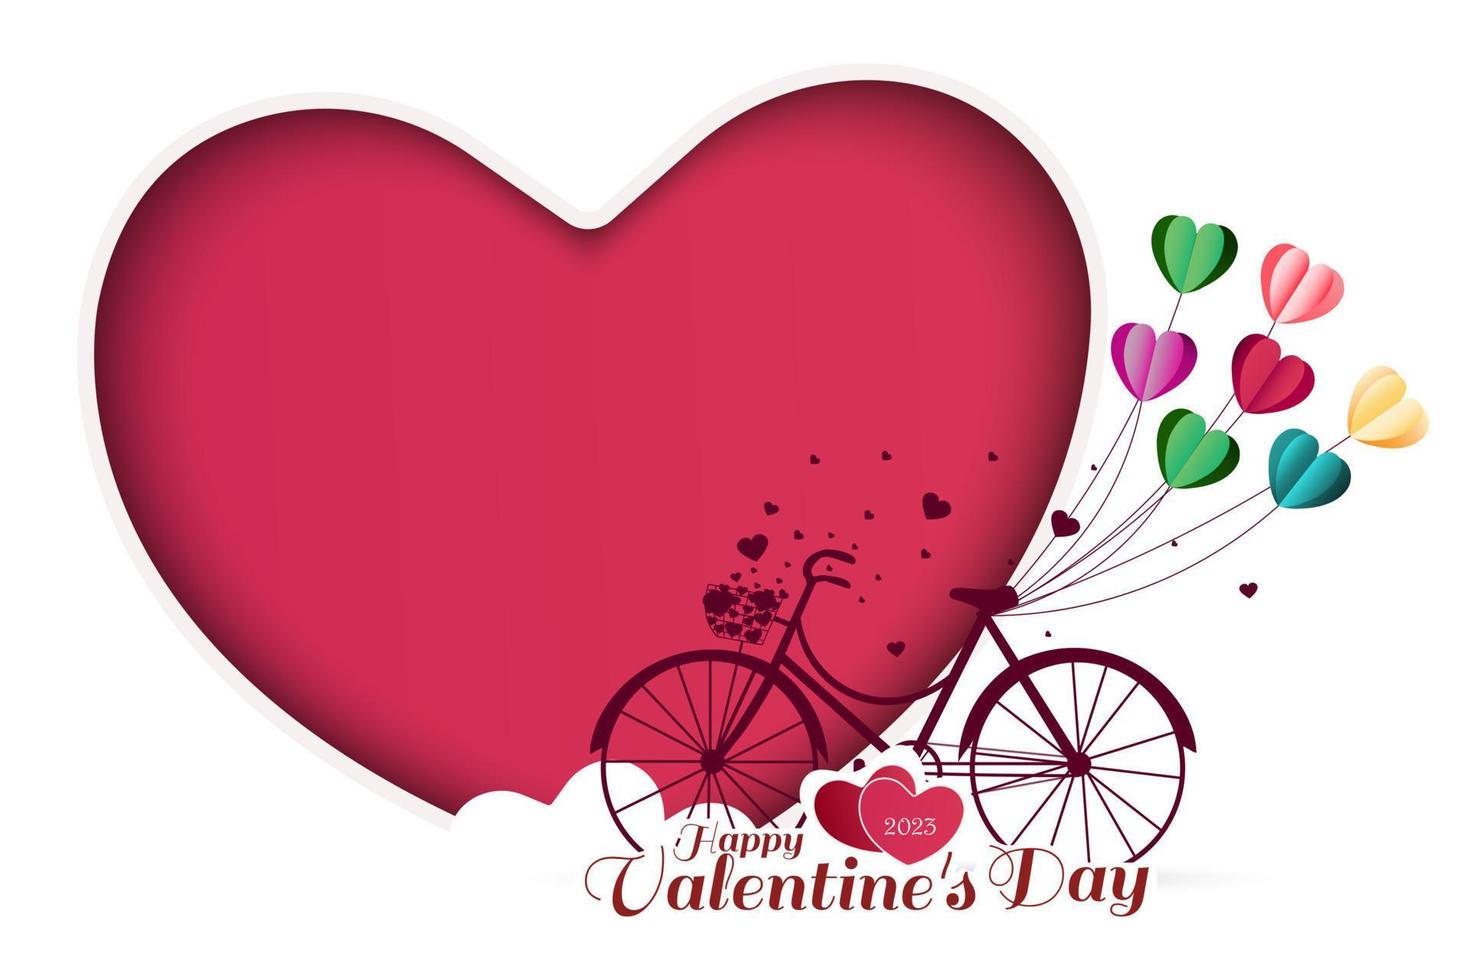 cartão de dia dos namorados com balões em forma de coração amarrados em uma bicicleta vermelha. corações grandes isolados no fundo branco. ilustração vetorial vetor